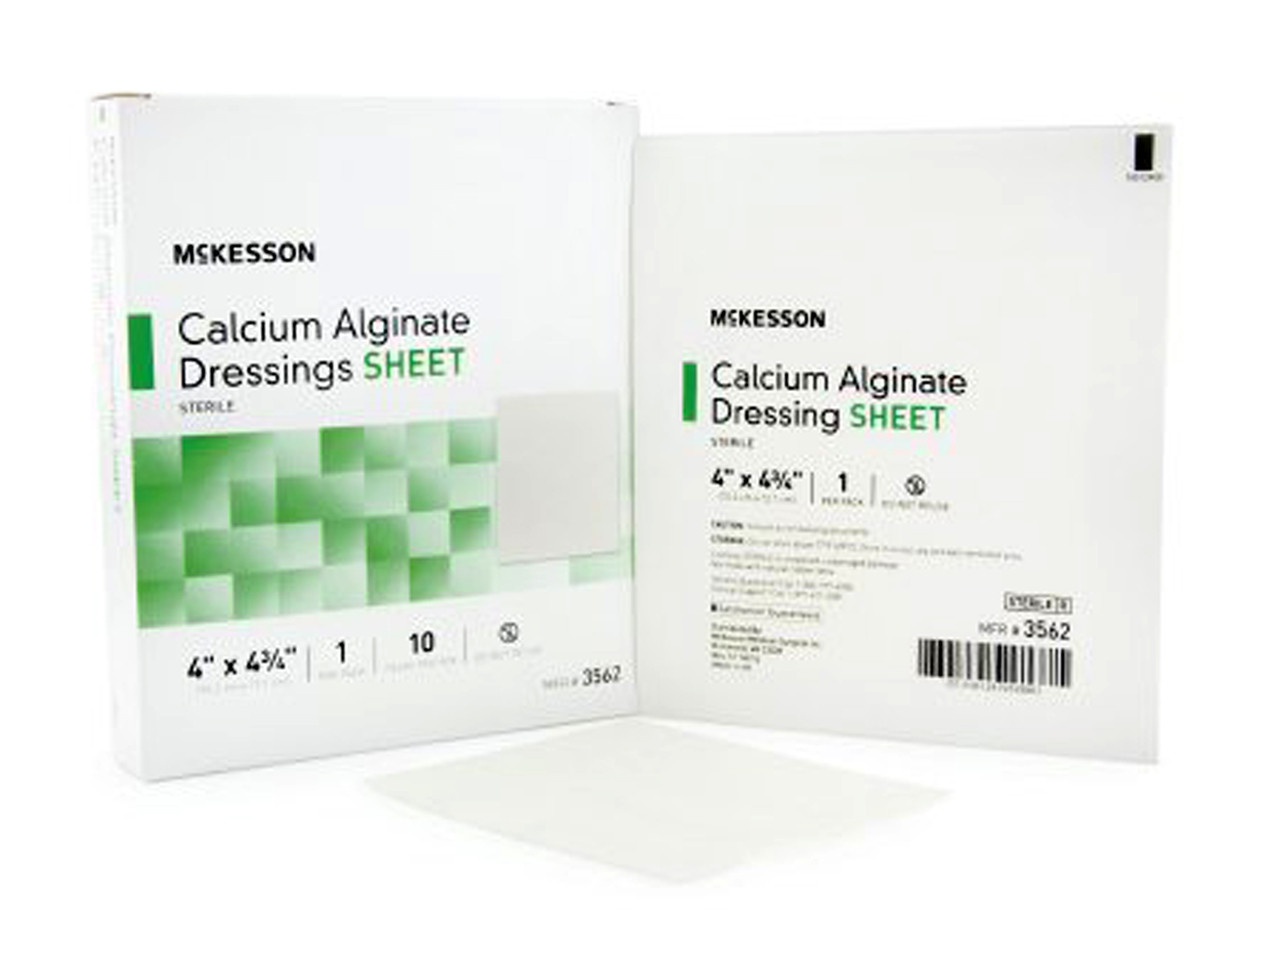 Medihoney Calcium Alginate Dressing 4 x 5